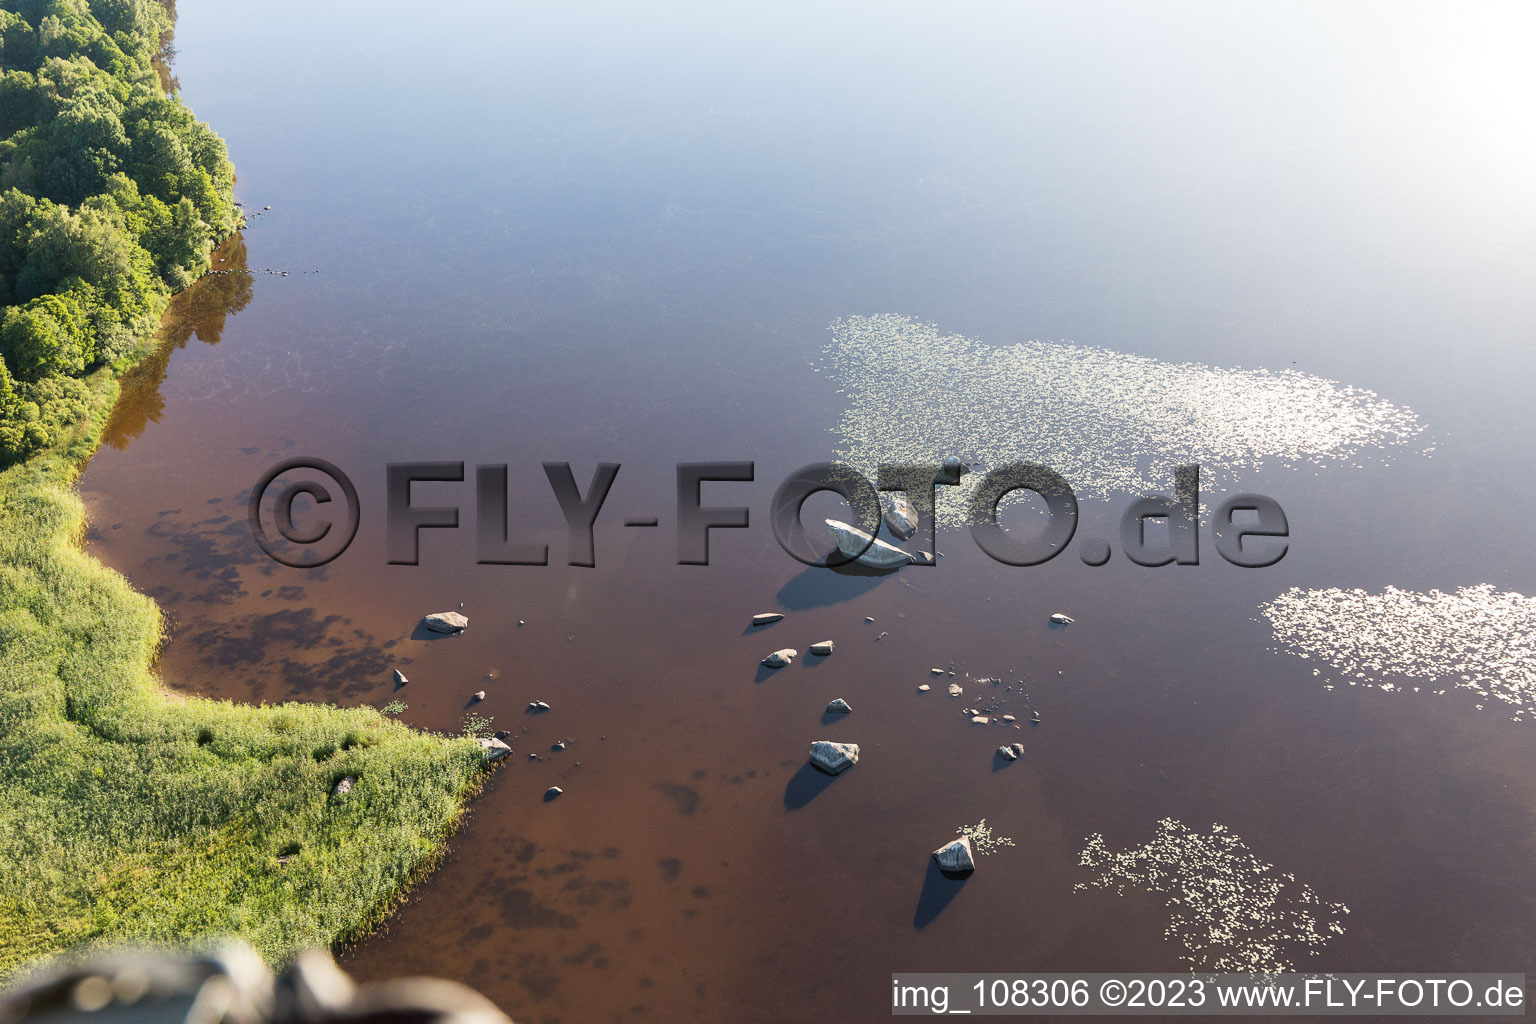 Hunna im Bundesland Kronoberg, Schweden von der Drohne aus gesehen